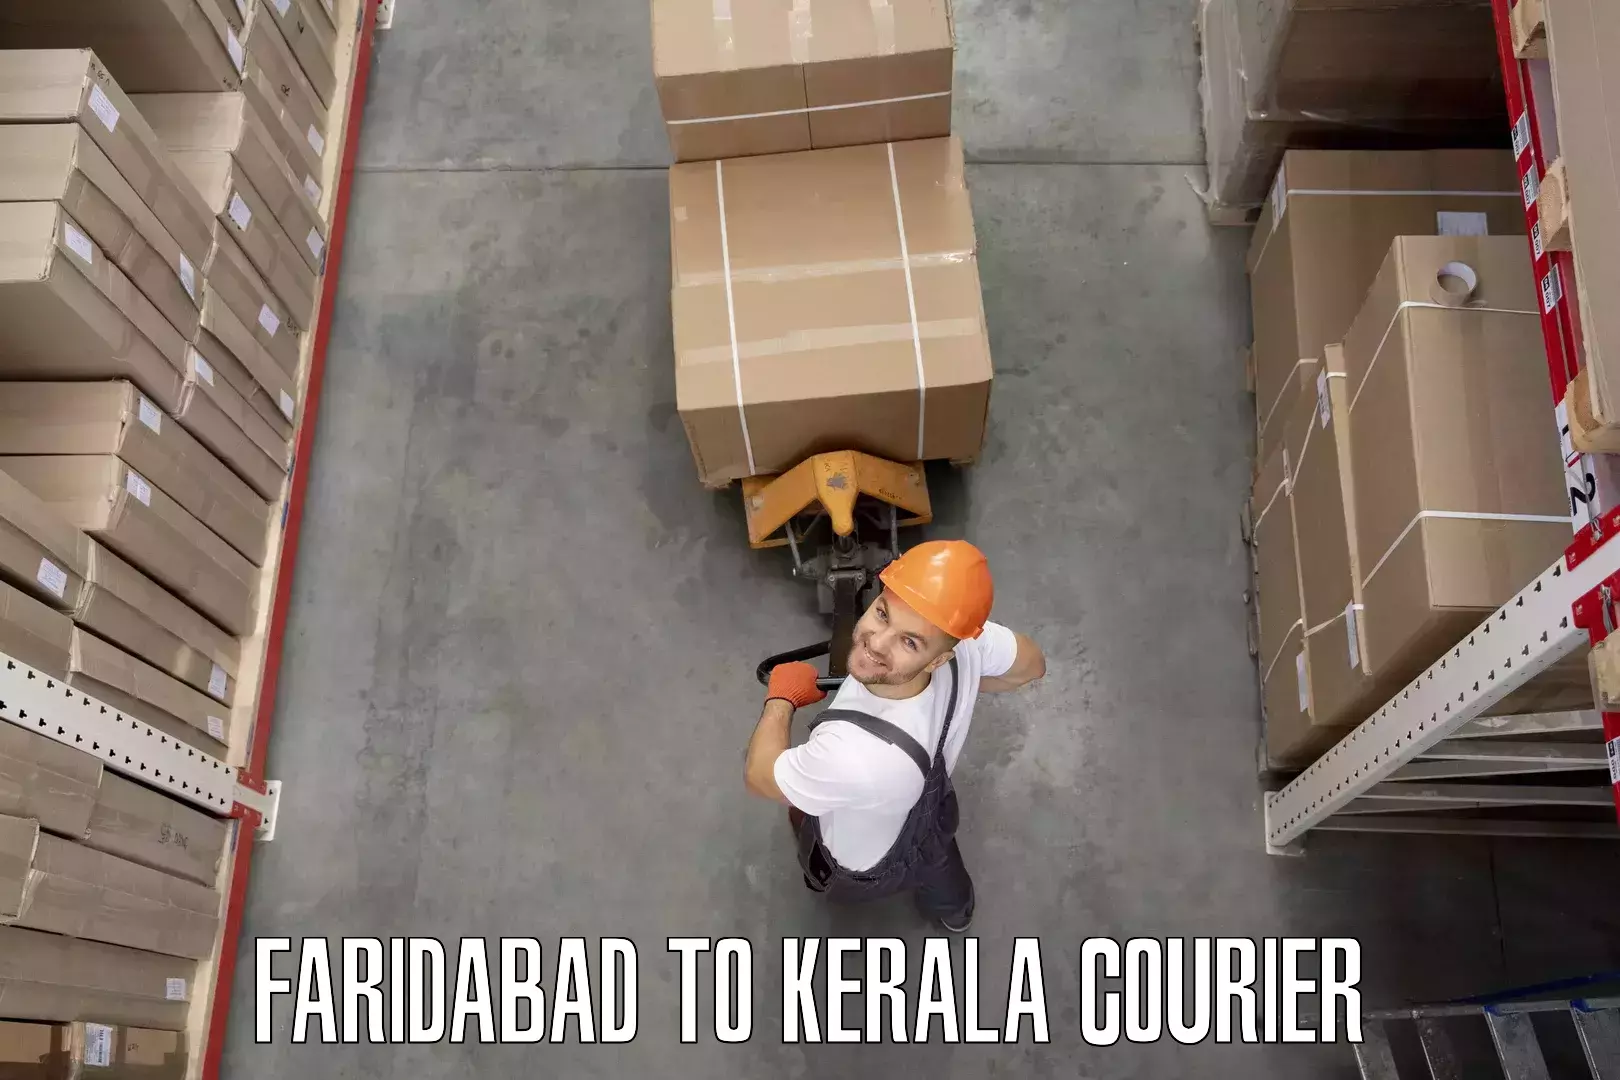 Moving and handling services Faridabad to Haripad